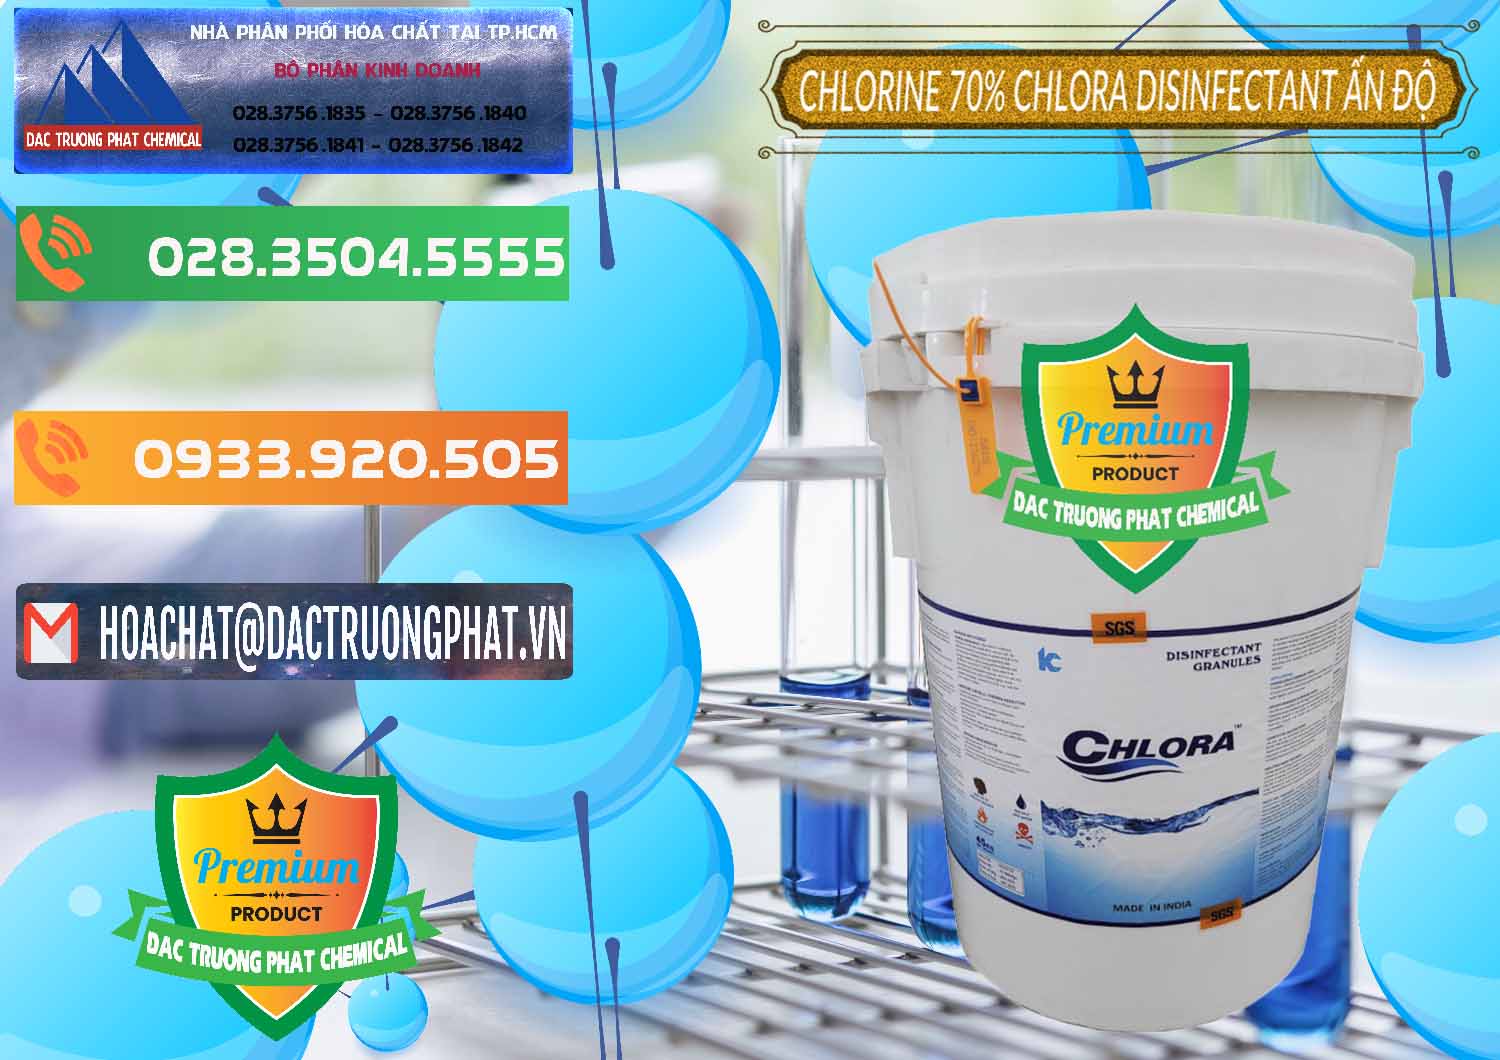 Cty nhập khẩu và bán Chlorine – Clorin 70% Chlora Disinfectant Ấn Độ India - 0213 - Nhà cung cấp & kinh doanh hóa chất tại TP.HCM - hoachatxulynuoc.com.vn